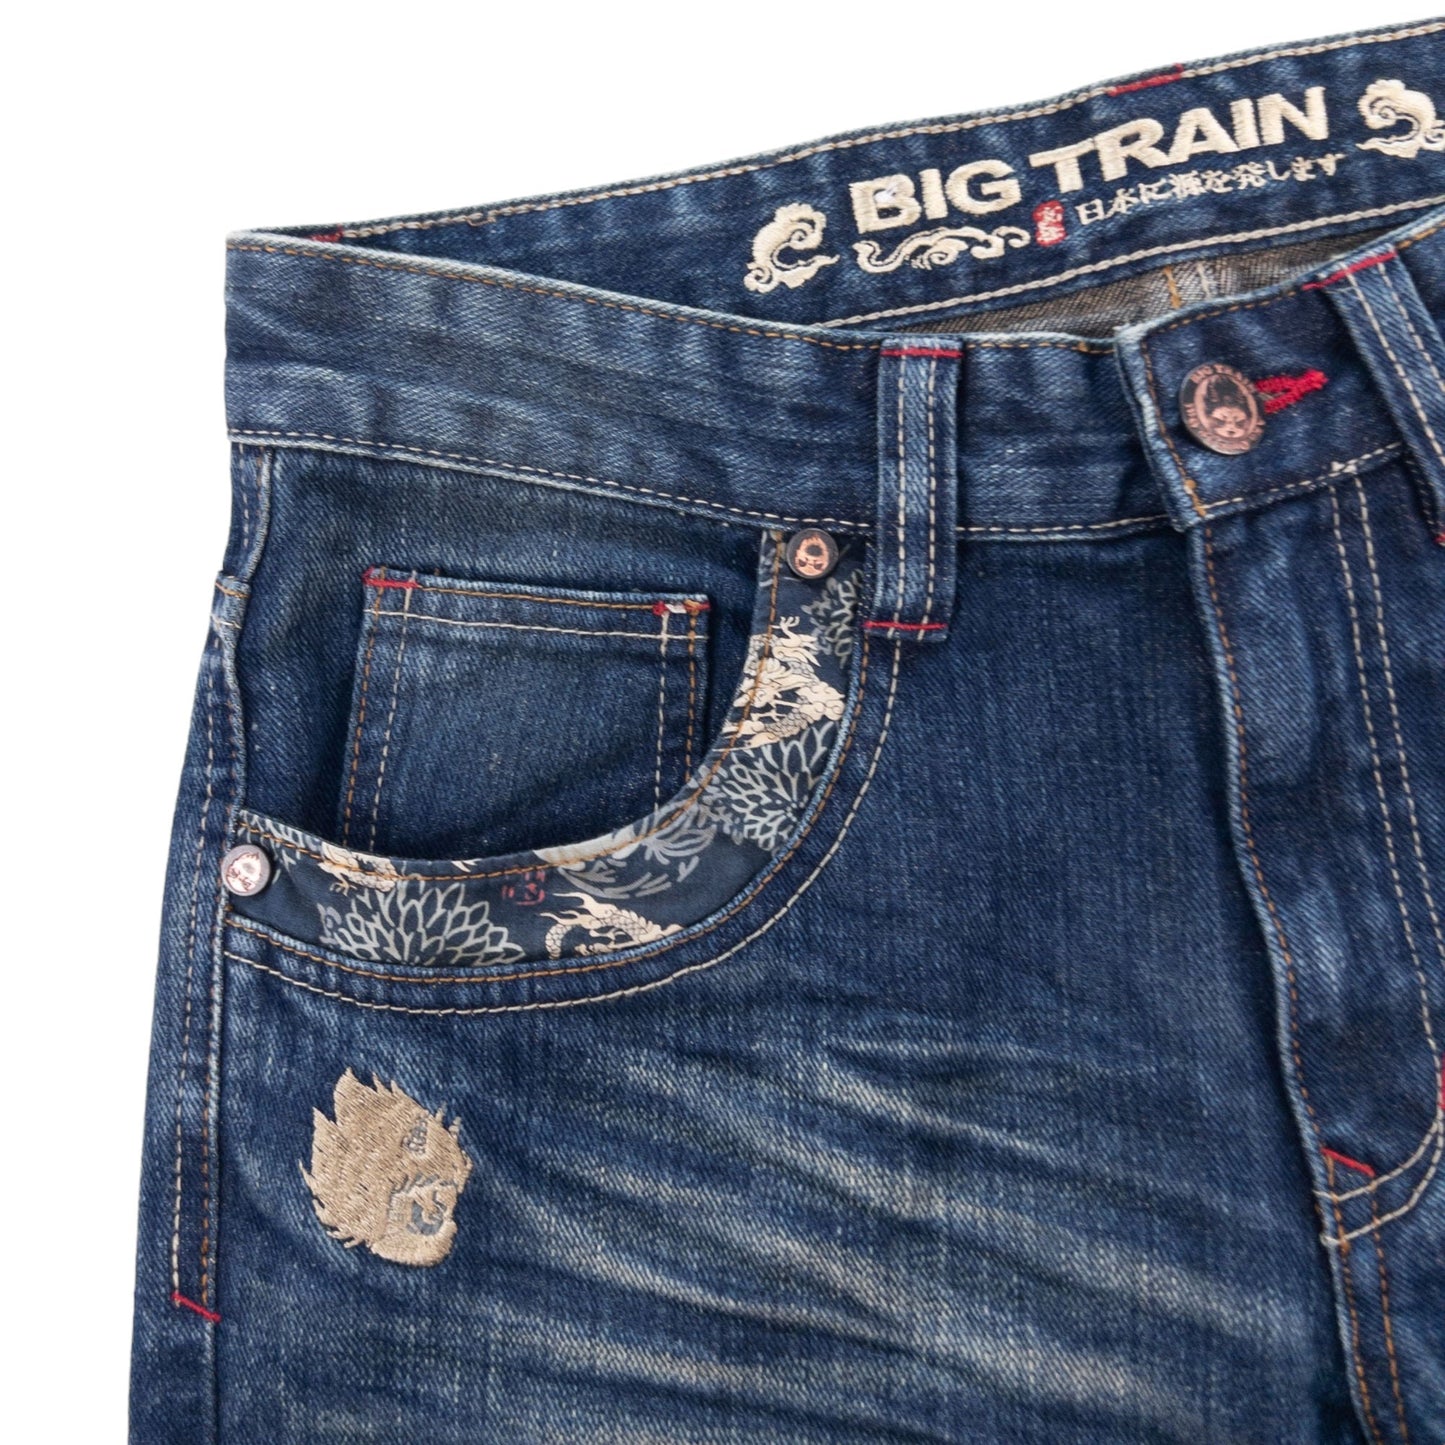 Vintage Monster Big Train Japanese Denim Jeans Size W31